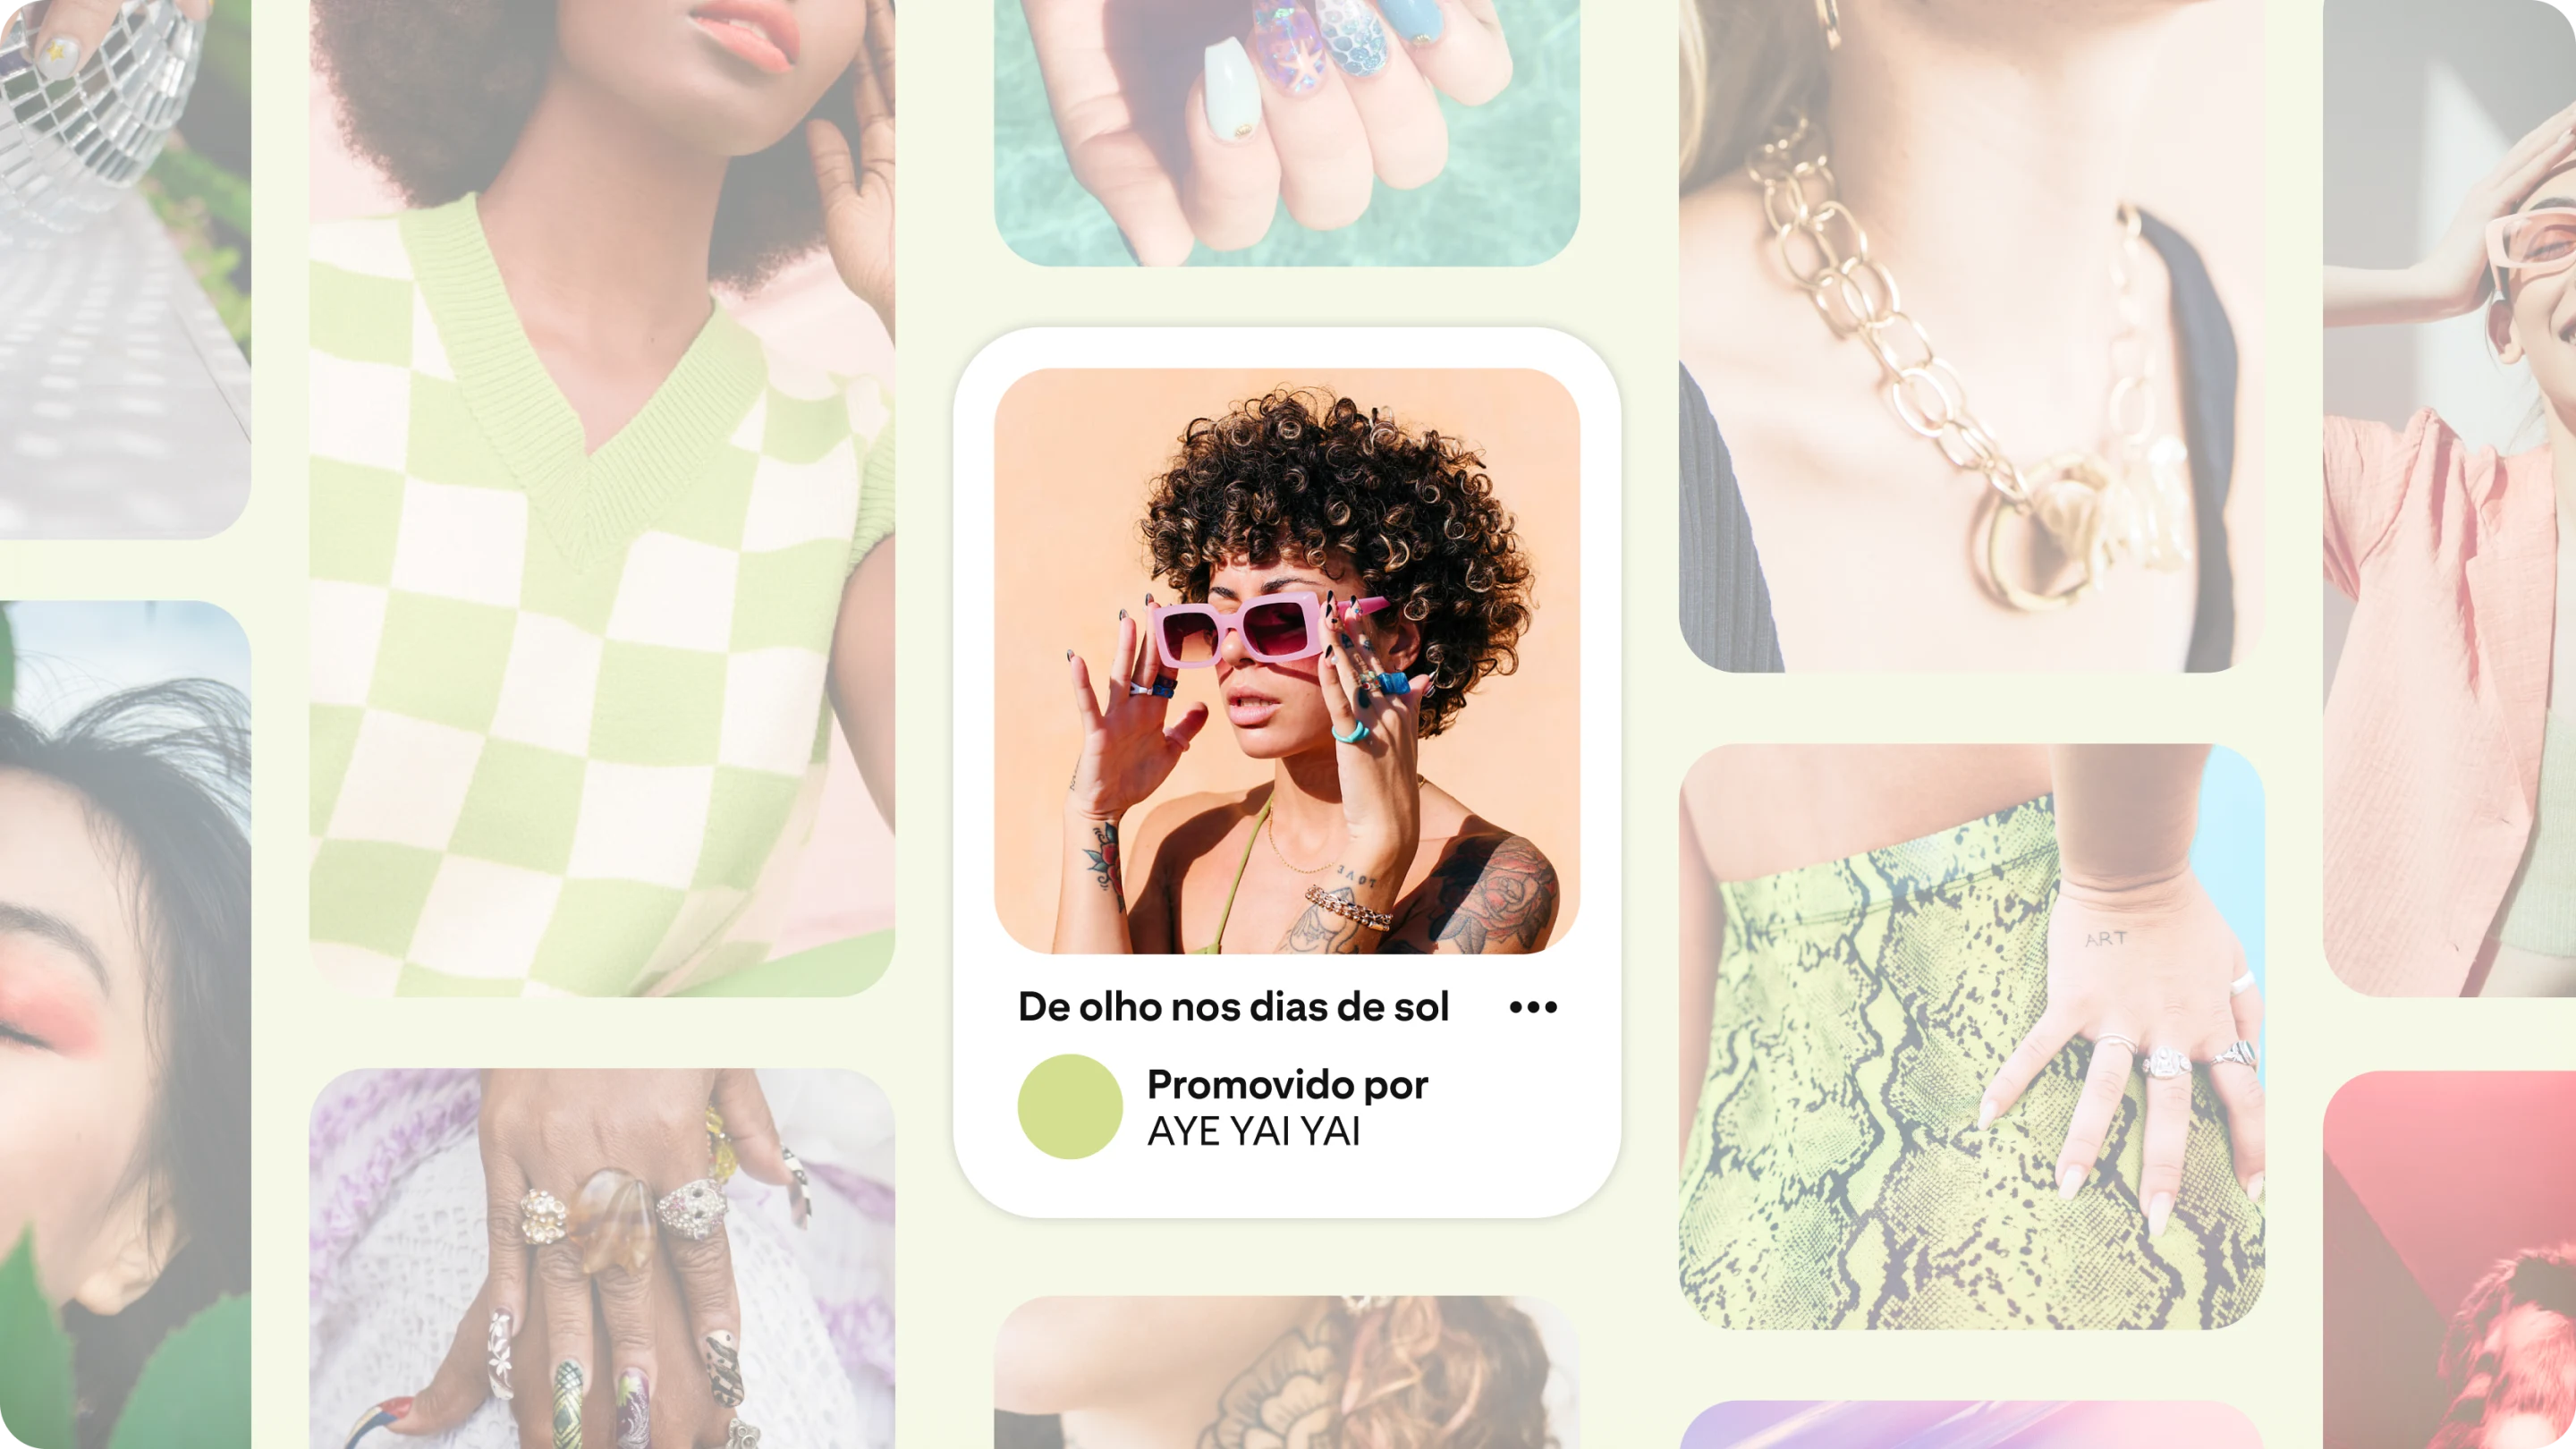 Dentro de uma grade de Pins de moda, um anúncio apresenta um par de óculos de sol cor de rosa em uma mulher que pertence à geração Z.